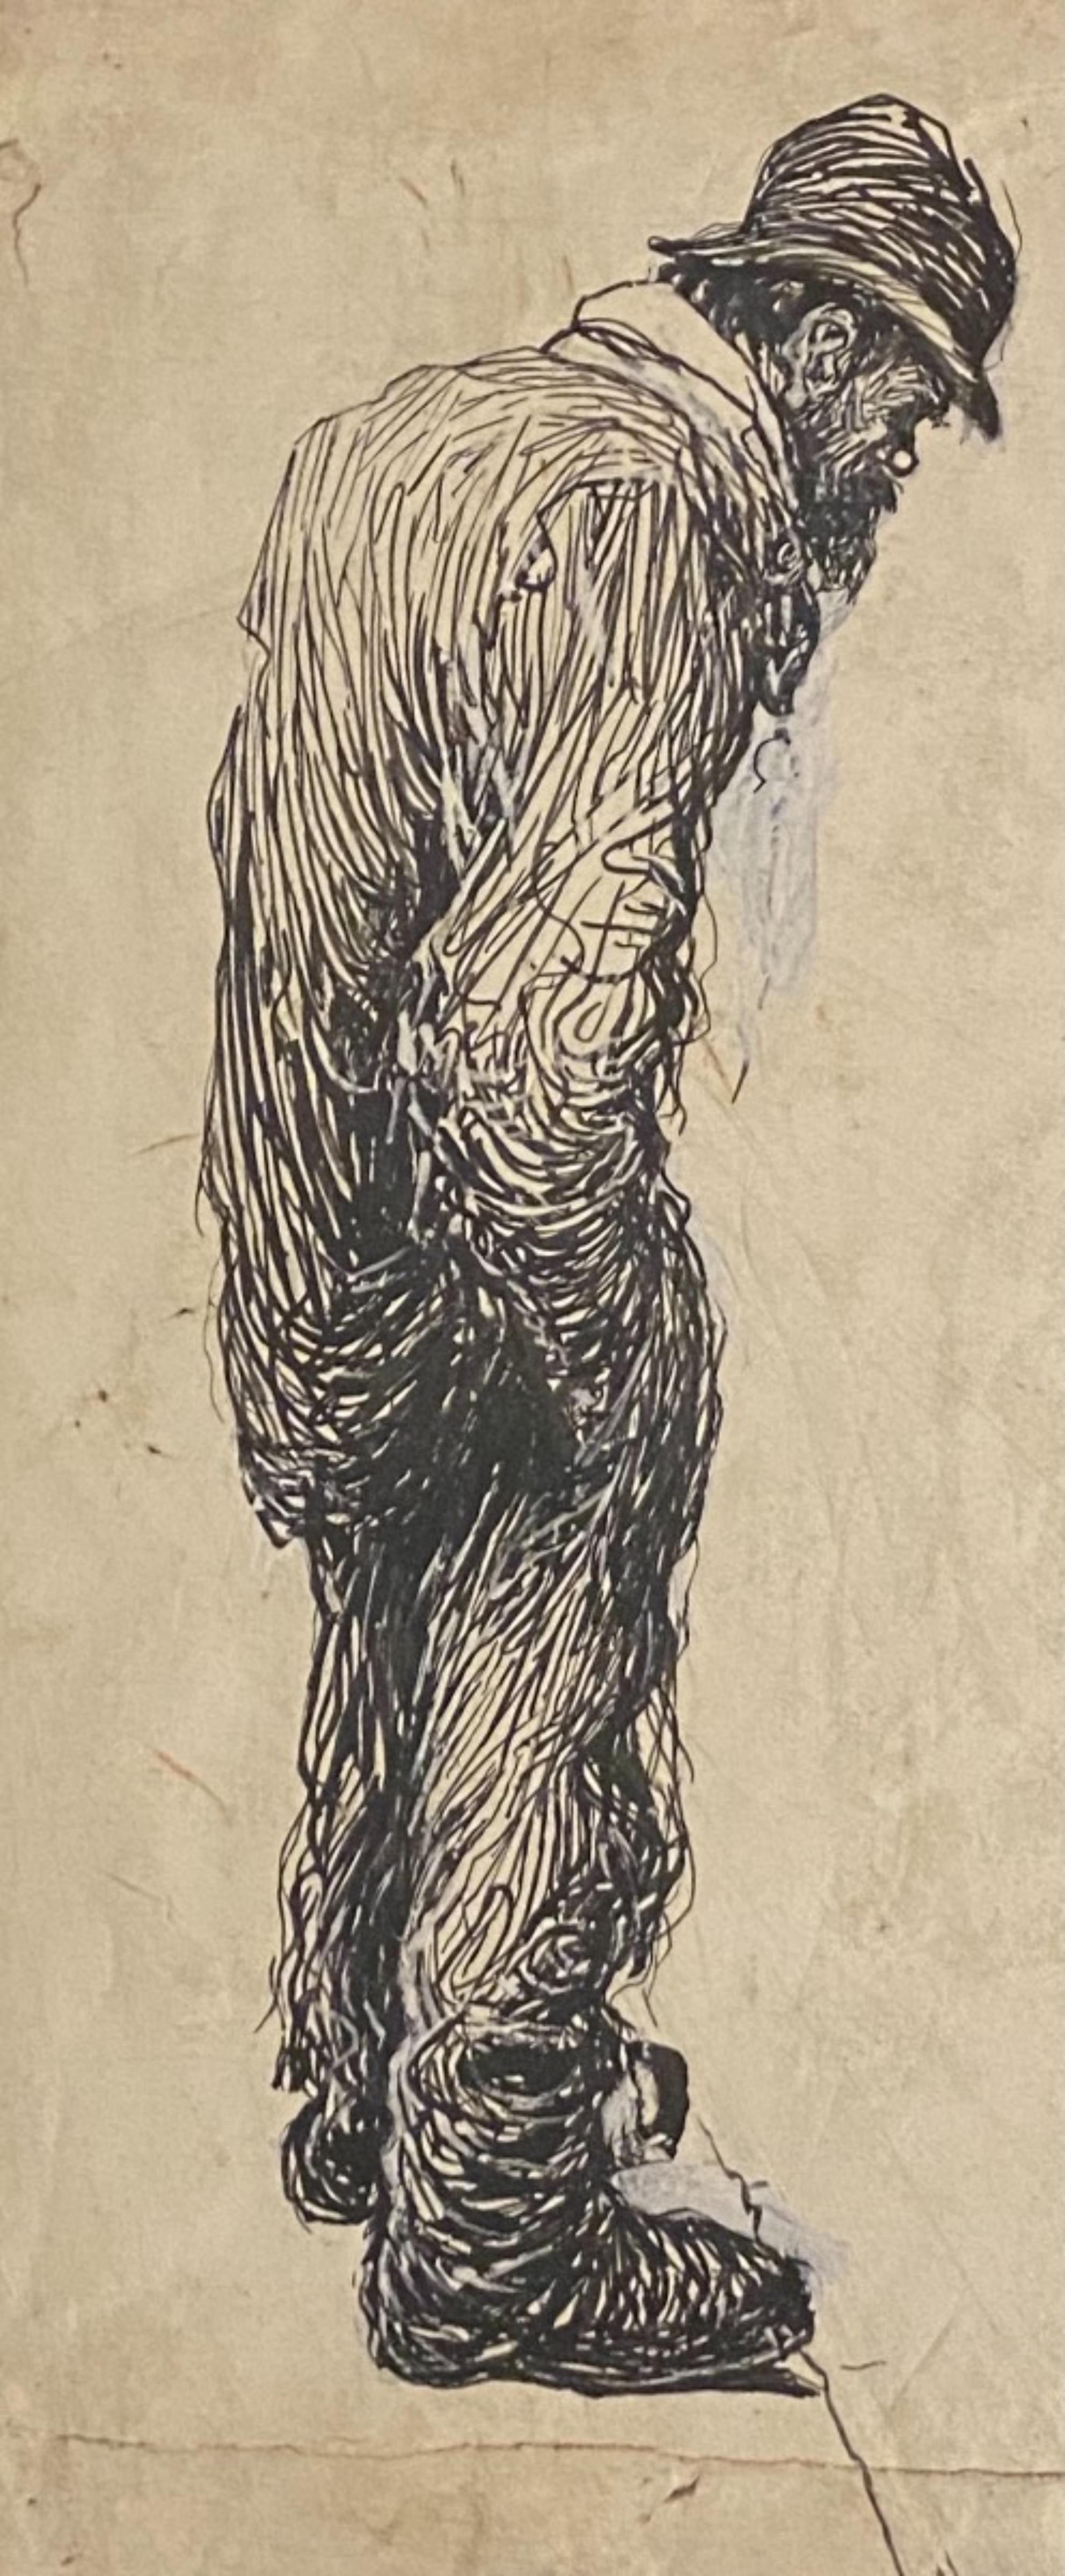 Der einsame Mann, in den 1910er Jahren,  ist eine Originalzeichnung in Porzellantinte auf cremefarbenem Papier realisiert  von Gabriele Galantara (1865-1937).

Unter guten Bedingungen.

Es handelt sich um eine Originalzeichnung, die einen Mann